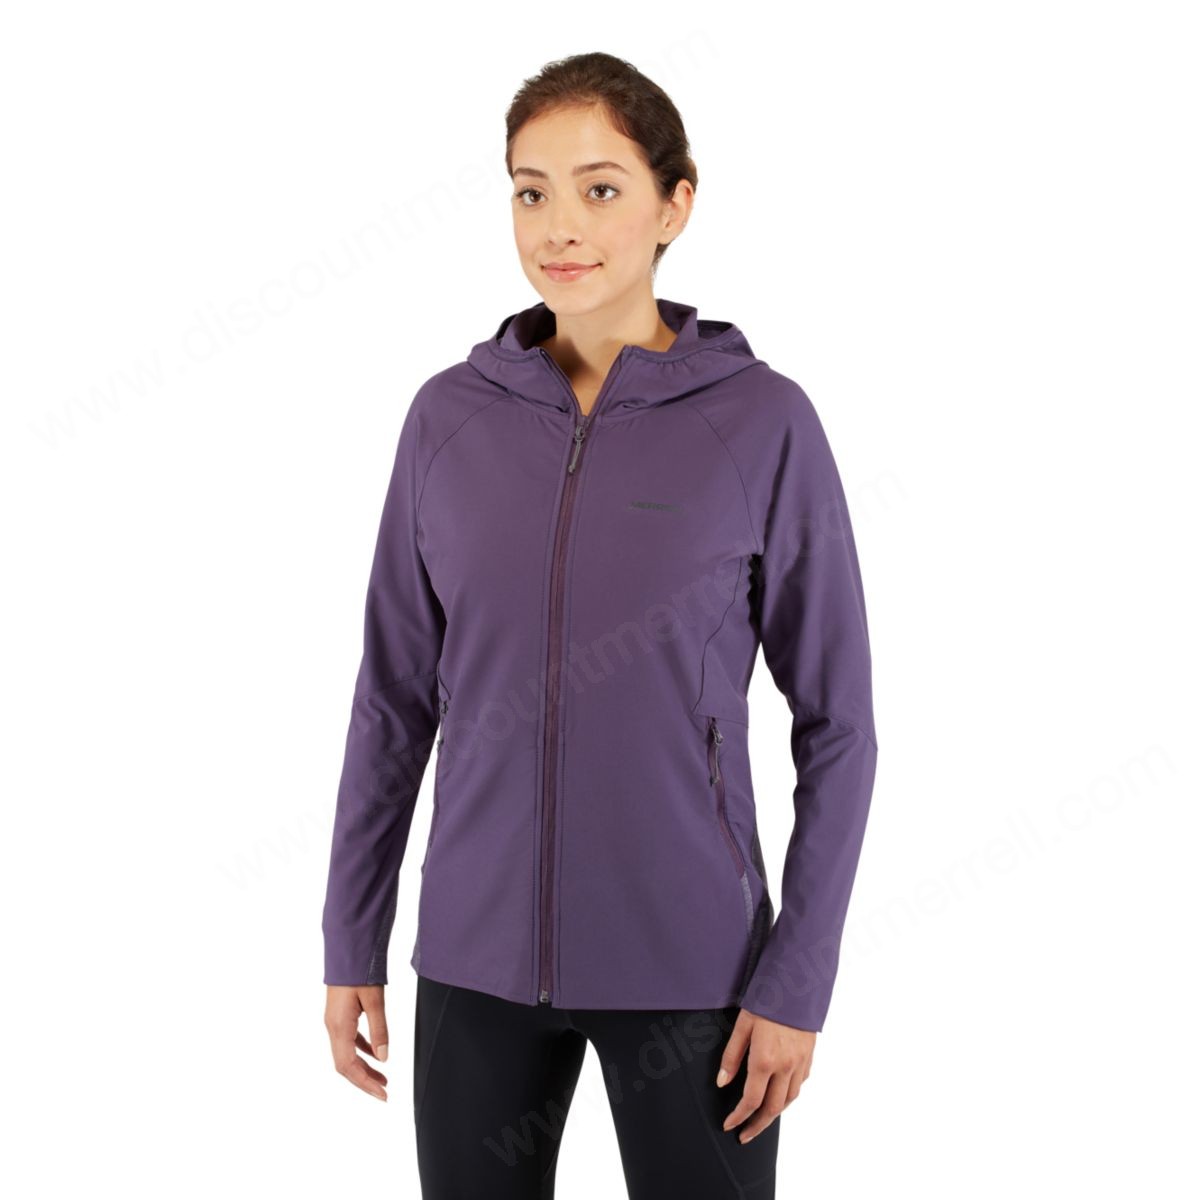 Merrell Woman's Stapleton Softshell Jacket Purple Velvet - -2